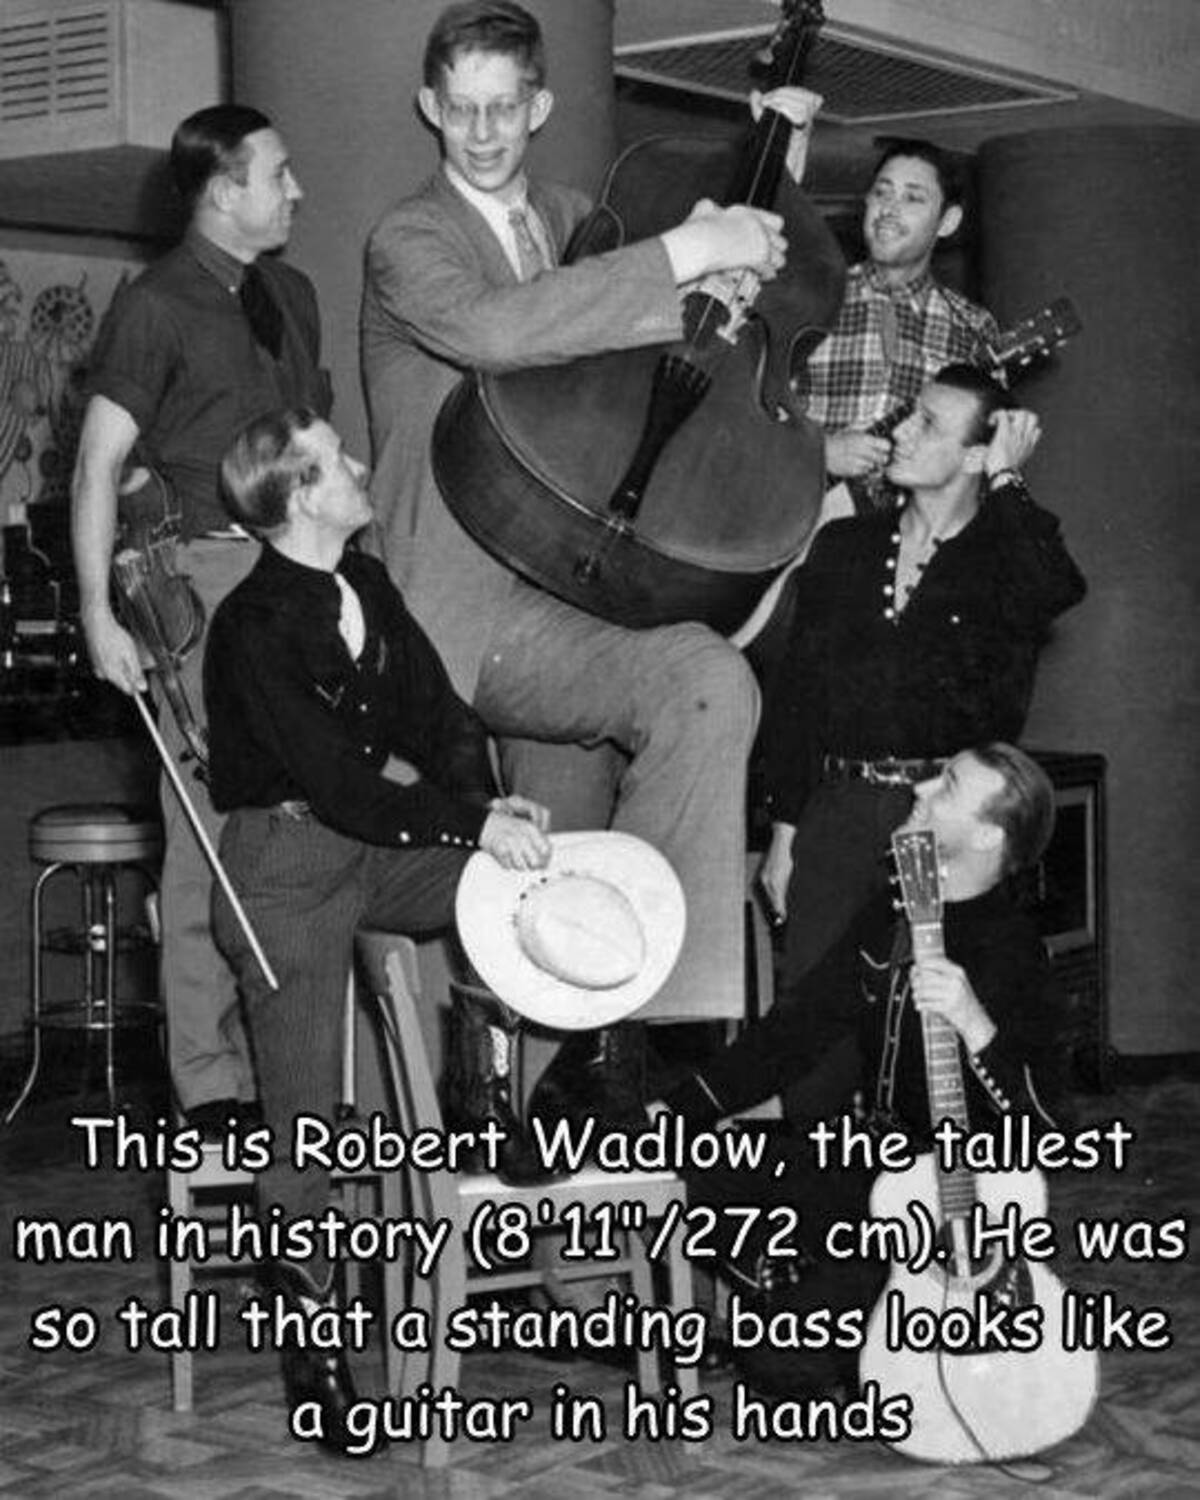 robert wadlow 1935 - This is Robert Wadlow, the tallest man in history 811